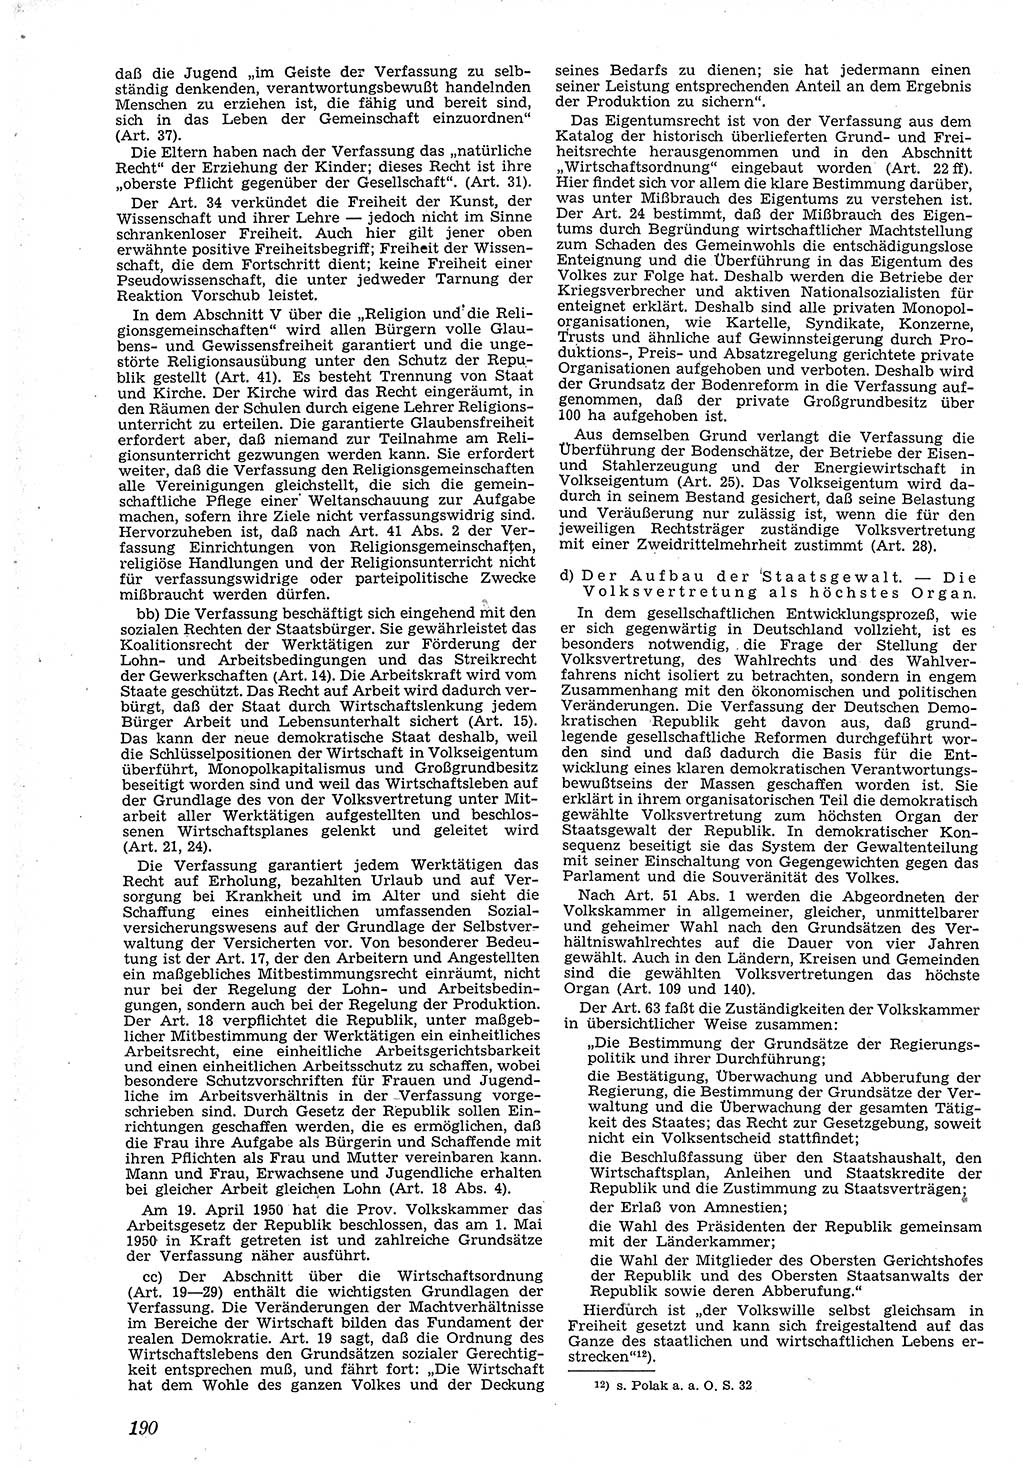 Neue Justiz (NJ), Zeitschrift für Recht und Rechtswissenschaft [Deutsche Demokratische Republik (DDR)], 4. Jahrgang 1950, Seite 190 (NJ DDR 1950, S. 190)